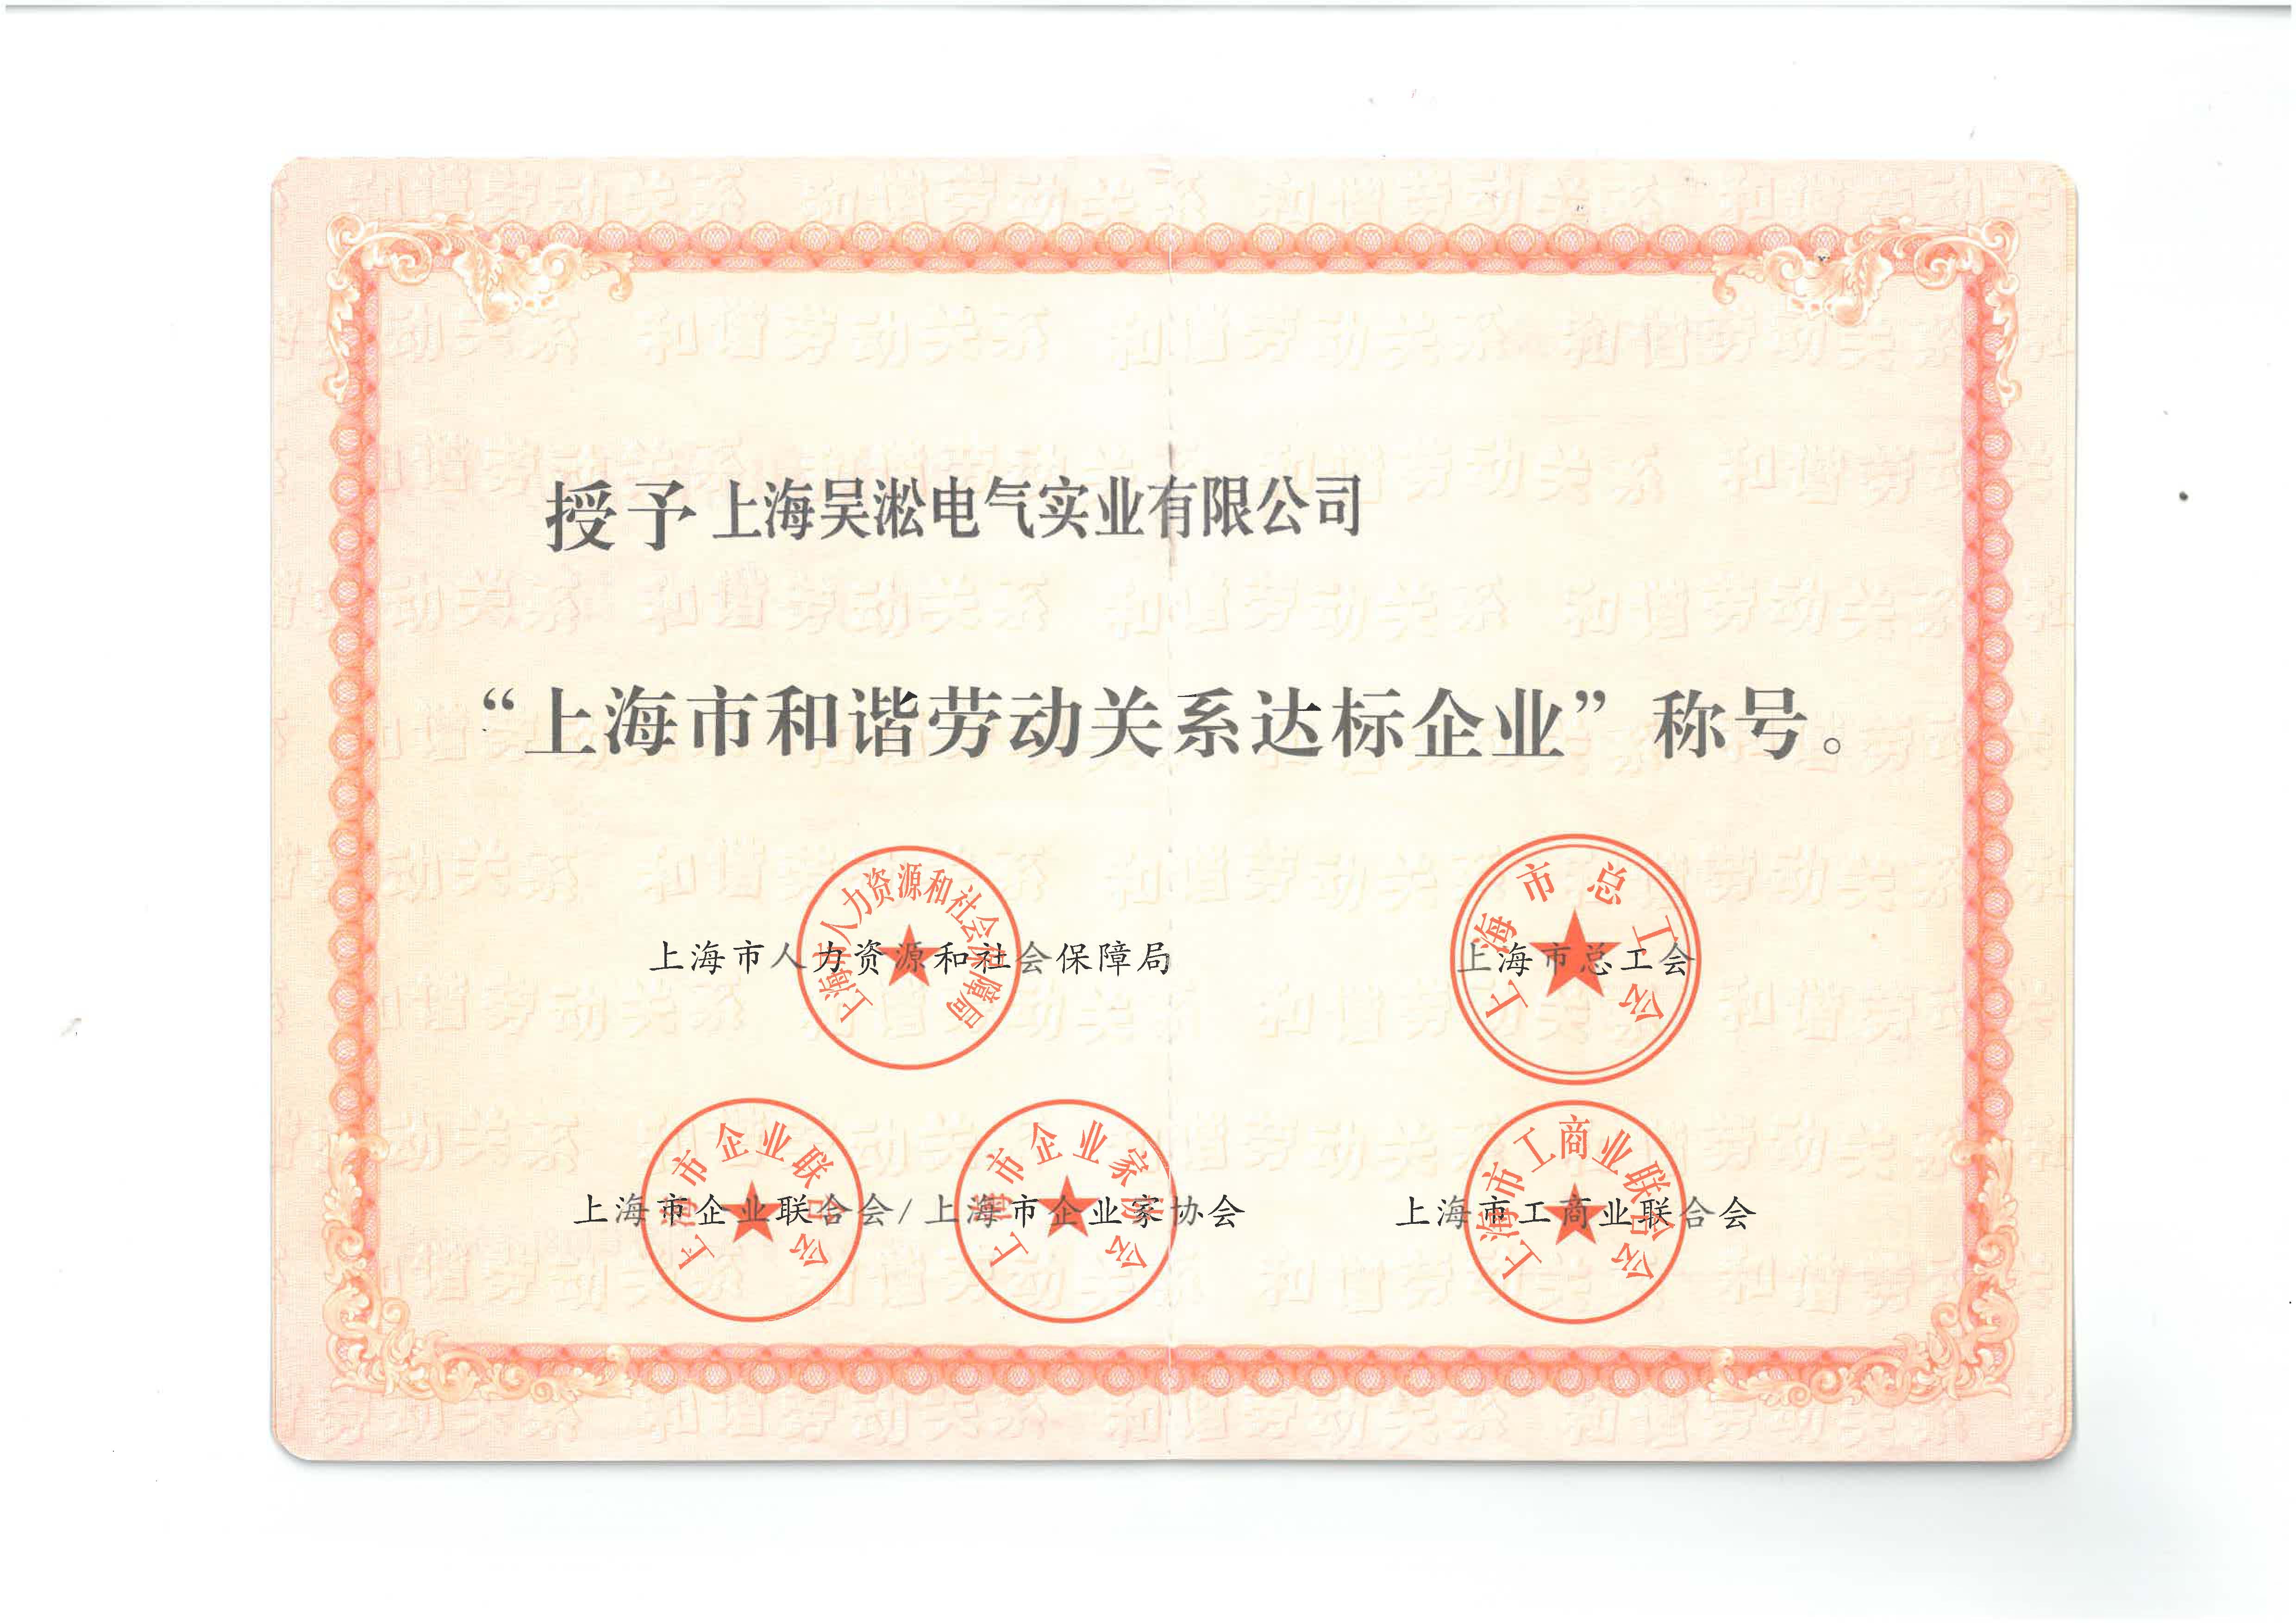 上海市和谐劳动关系证书.jpg